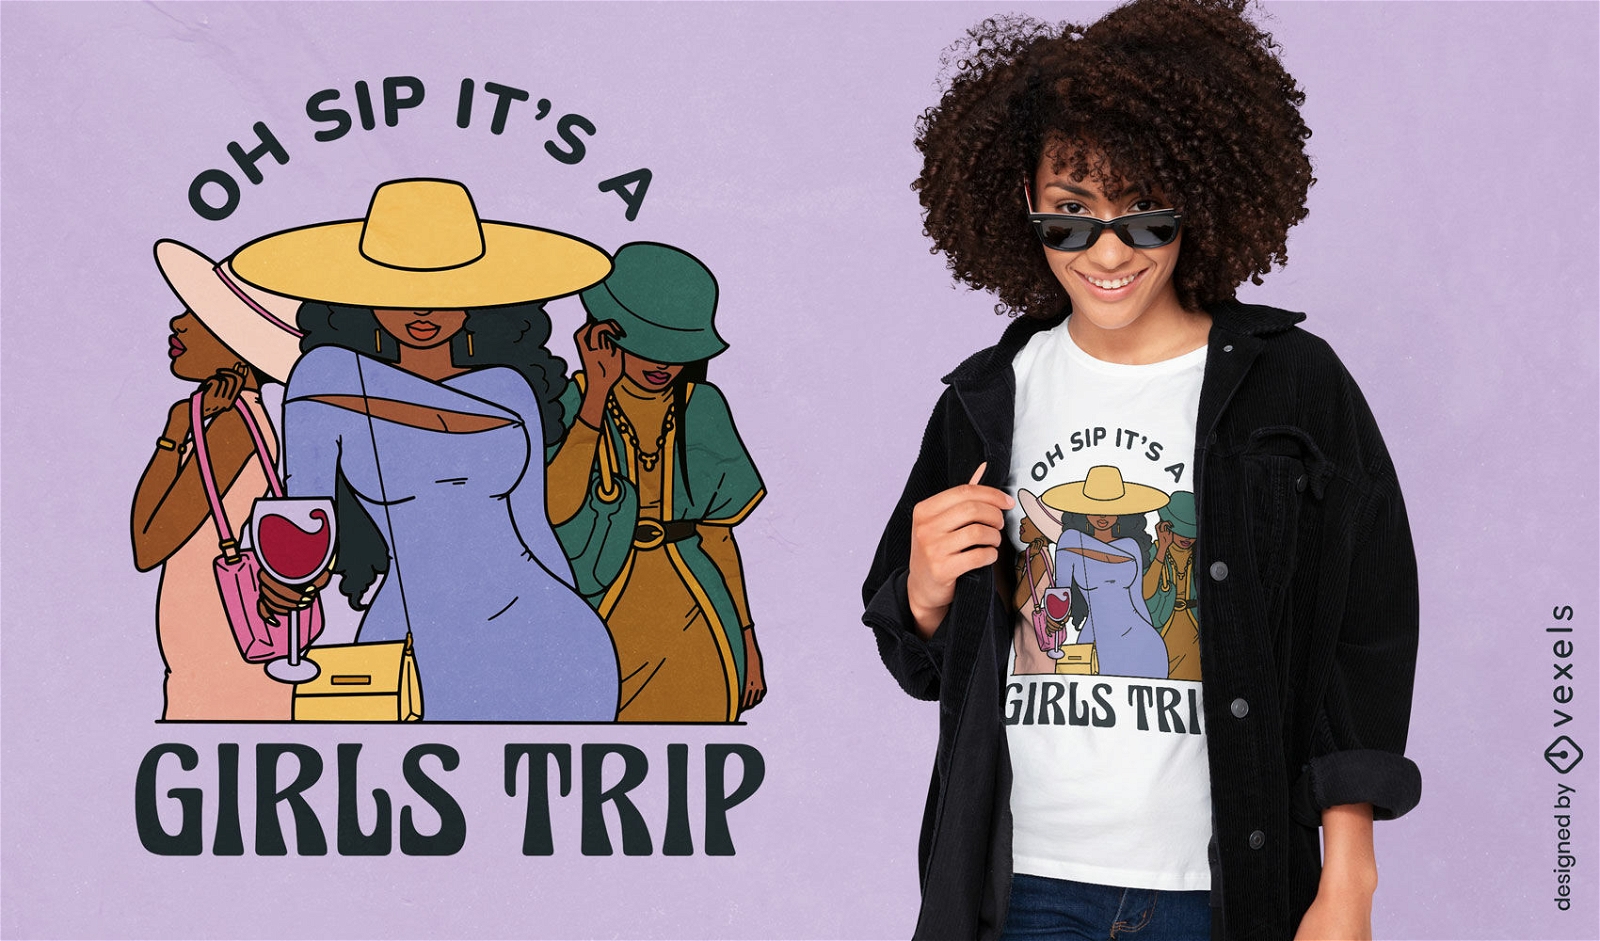 Girls trip friends t-shirt design